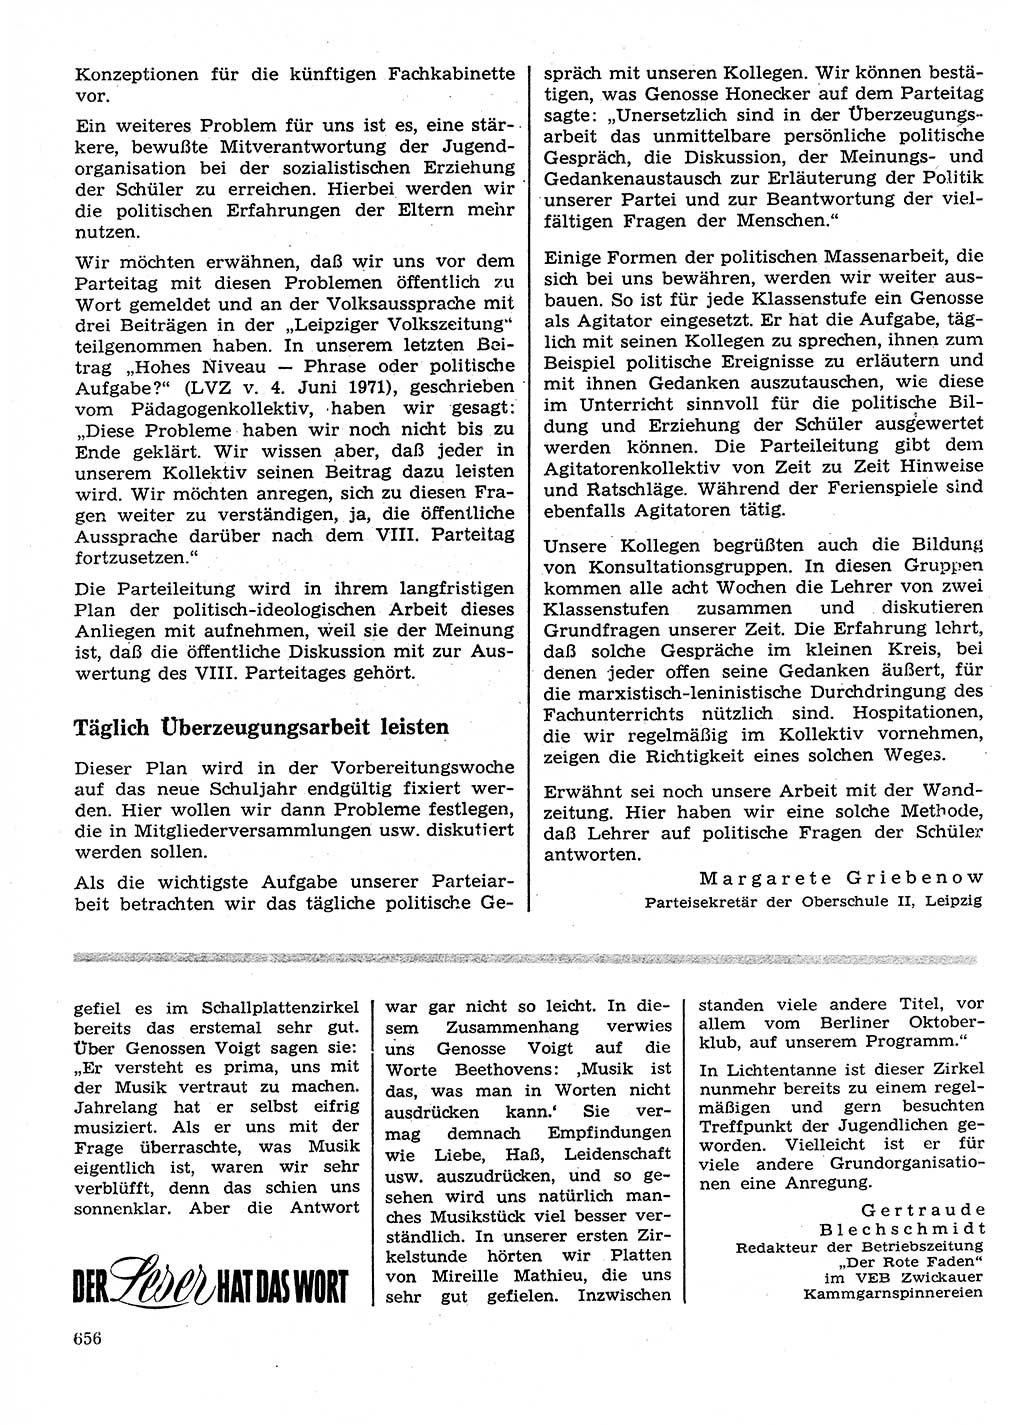 Neuer Weg (NW), Organ des Zentralkomitees (ZK) der SED (Sozialistische Einheitspartei Deutschlands) für Fragen des Parteilebens, 26. Jahrgang [Deutsche Demokratische Republik (DDR)] 1971, Seite 656 (NW ZK SED DDR 1971, S. 656)